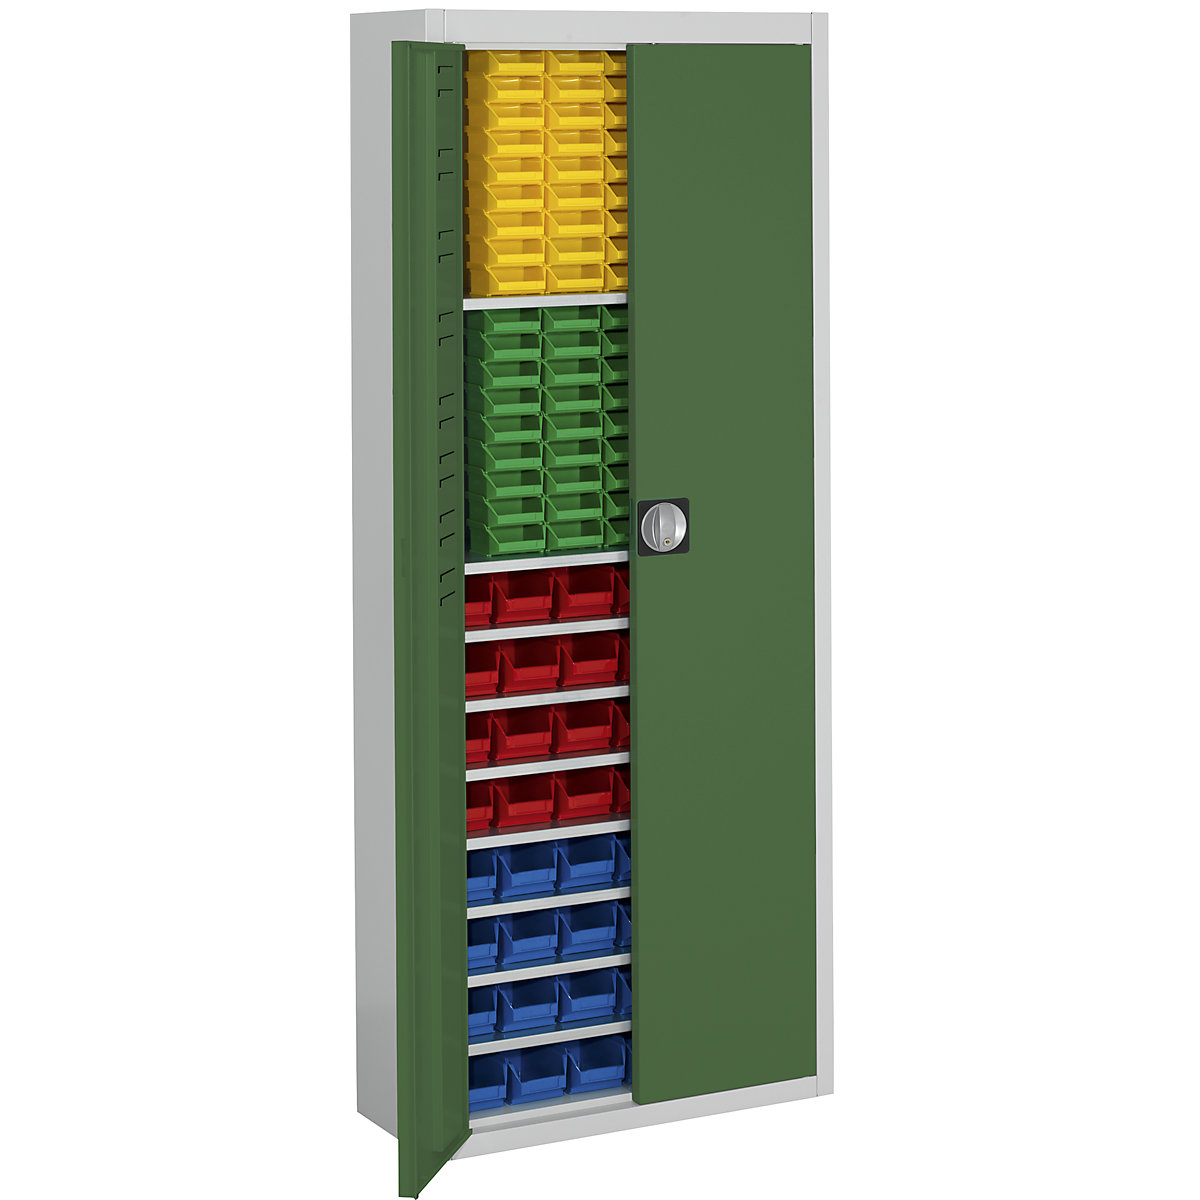 Armadio magazzino con cassette – mauser, alt. x largh. x prof. 1740 x 680 x 280 mm, in due colori, corpo grigio, ante verdi, 138 cassettine-15